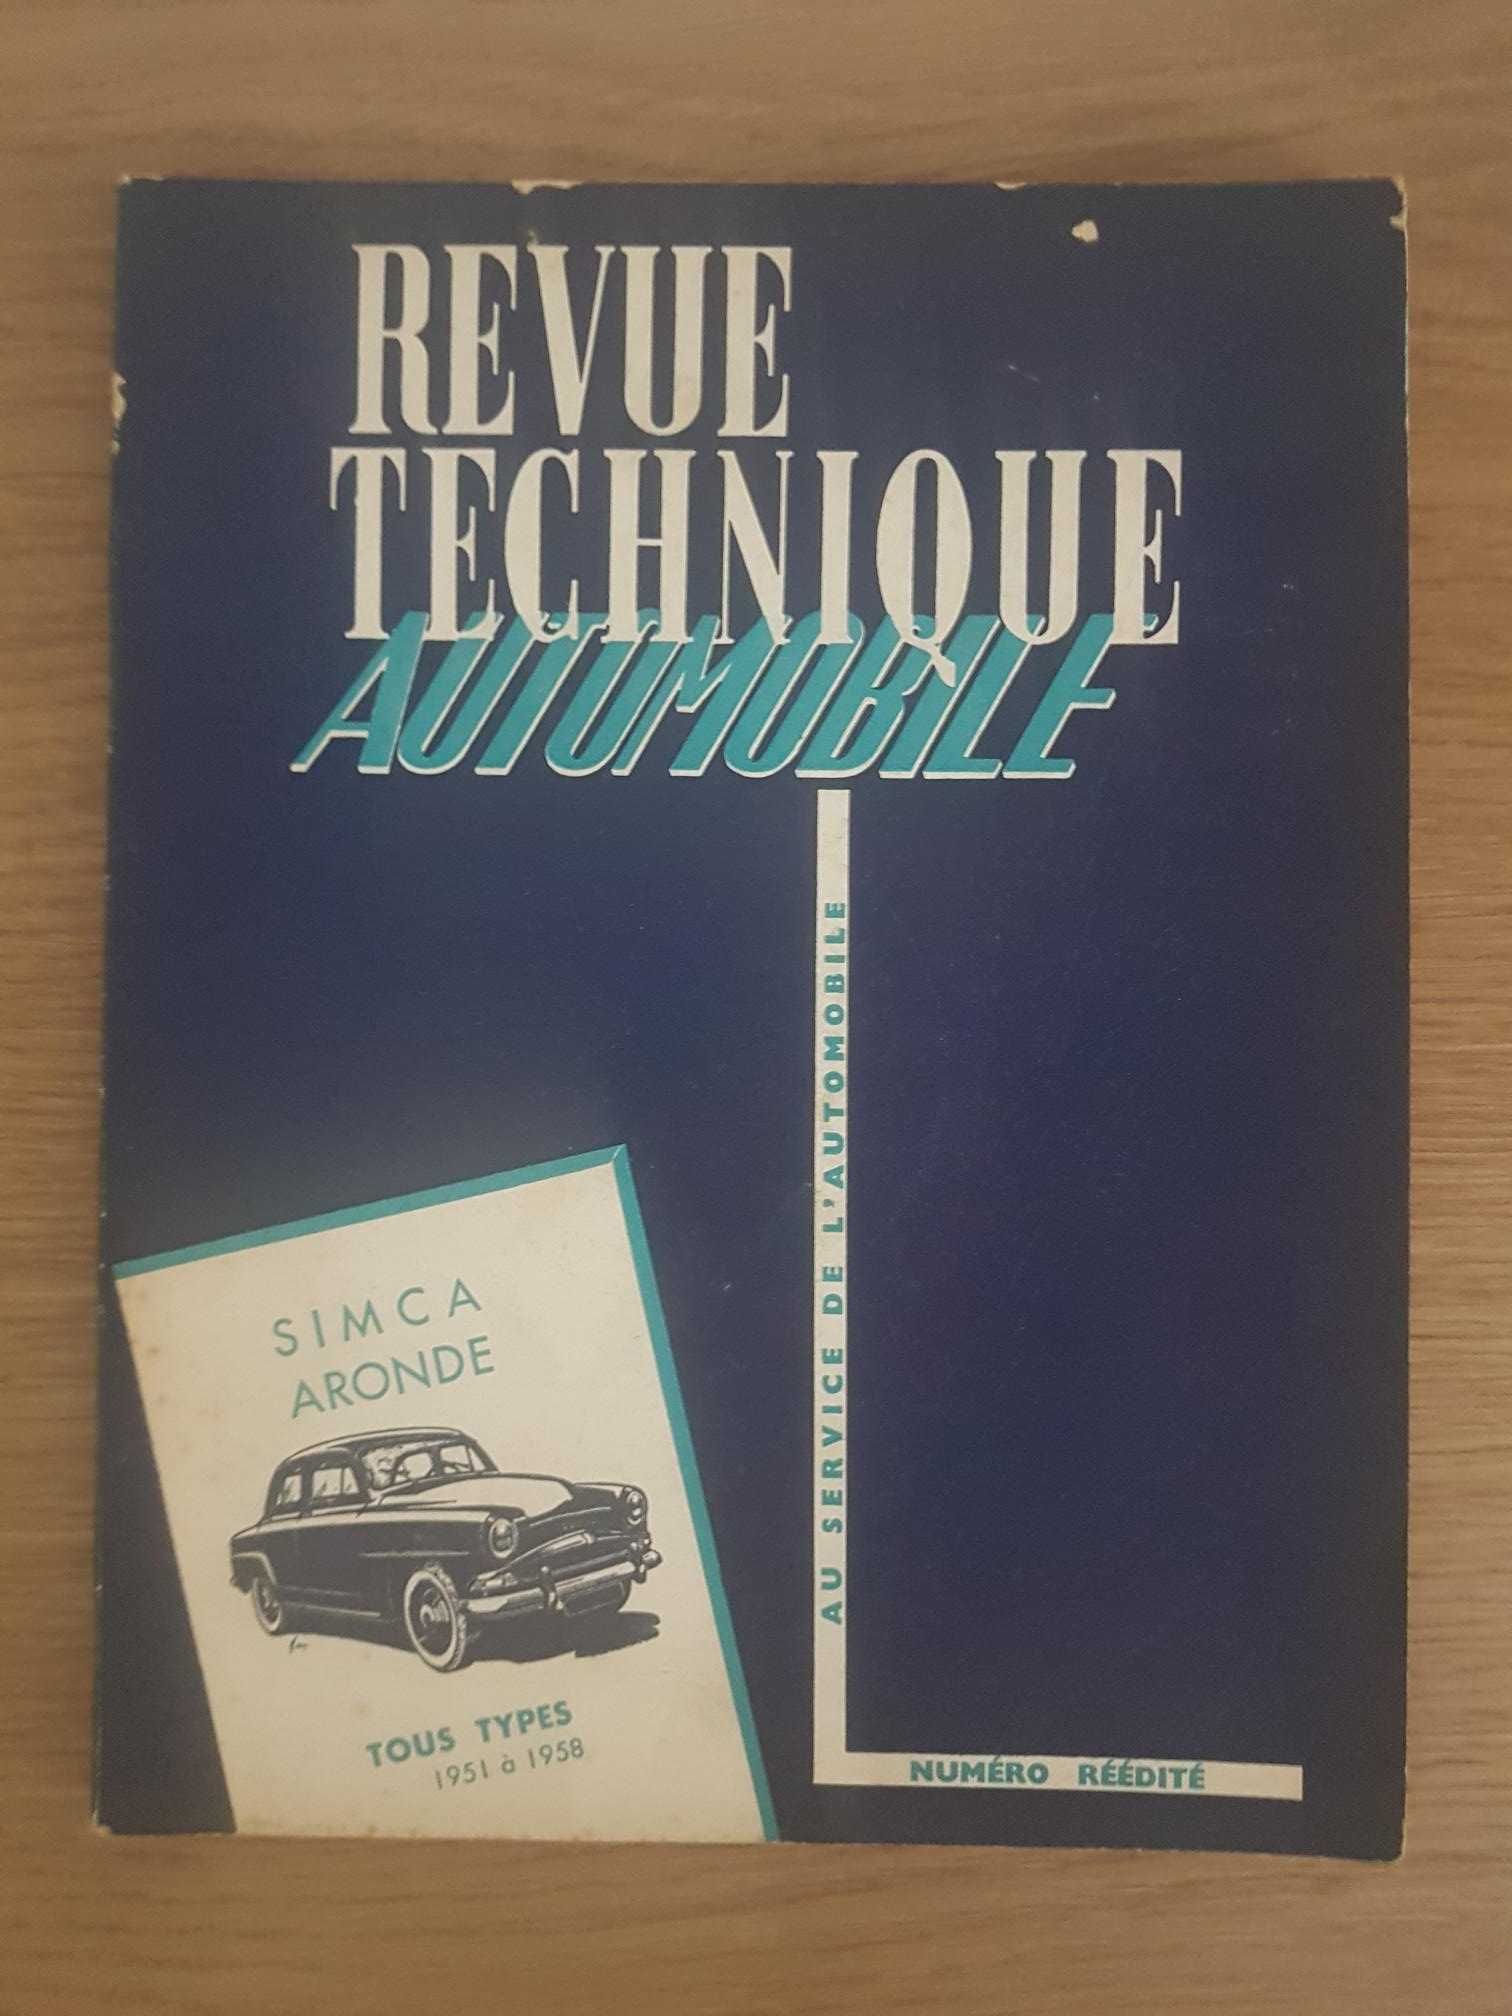 Revue Technique Automobile (Numéro Réédité) Simca Aronde